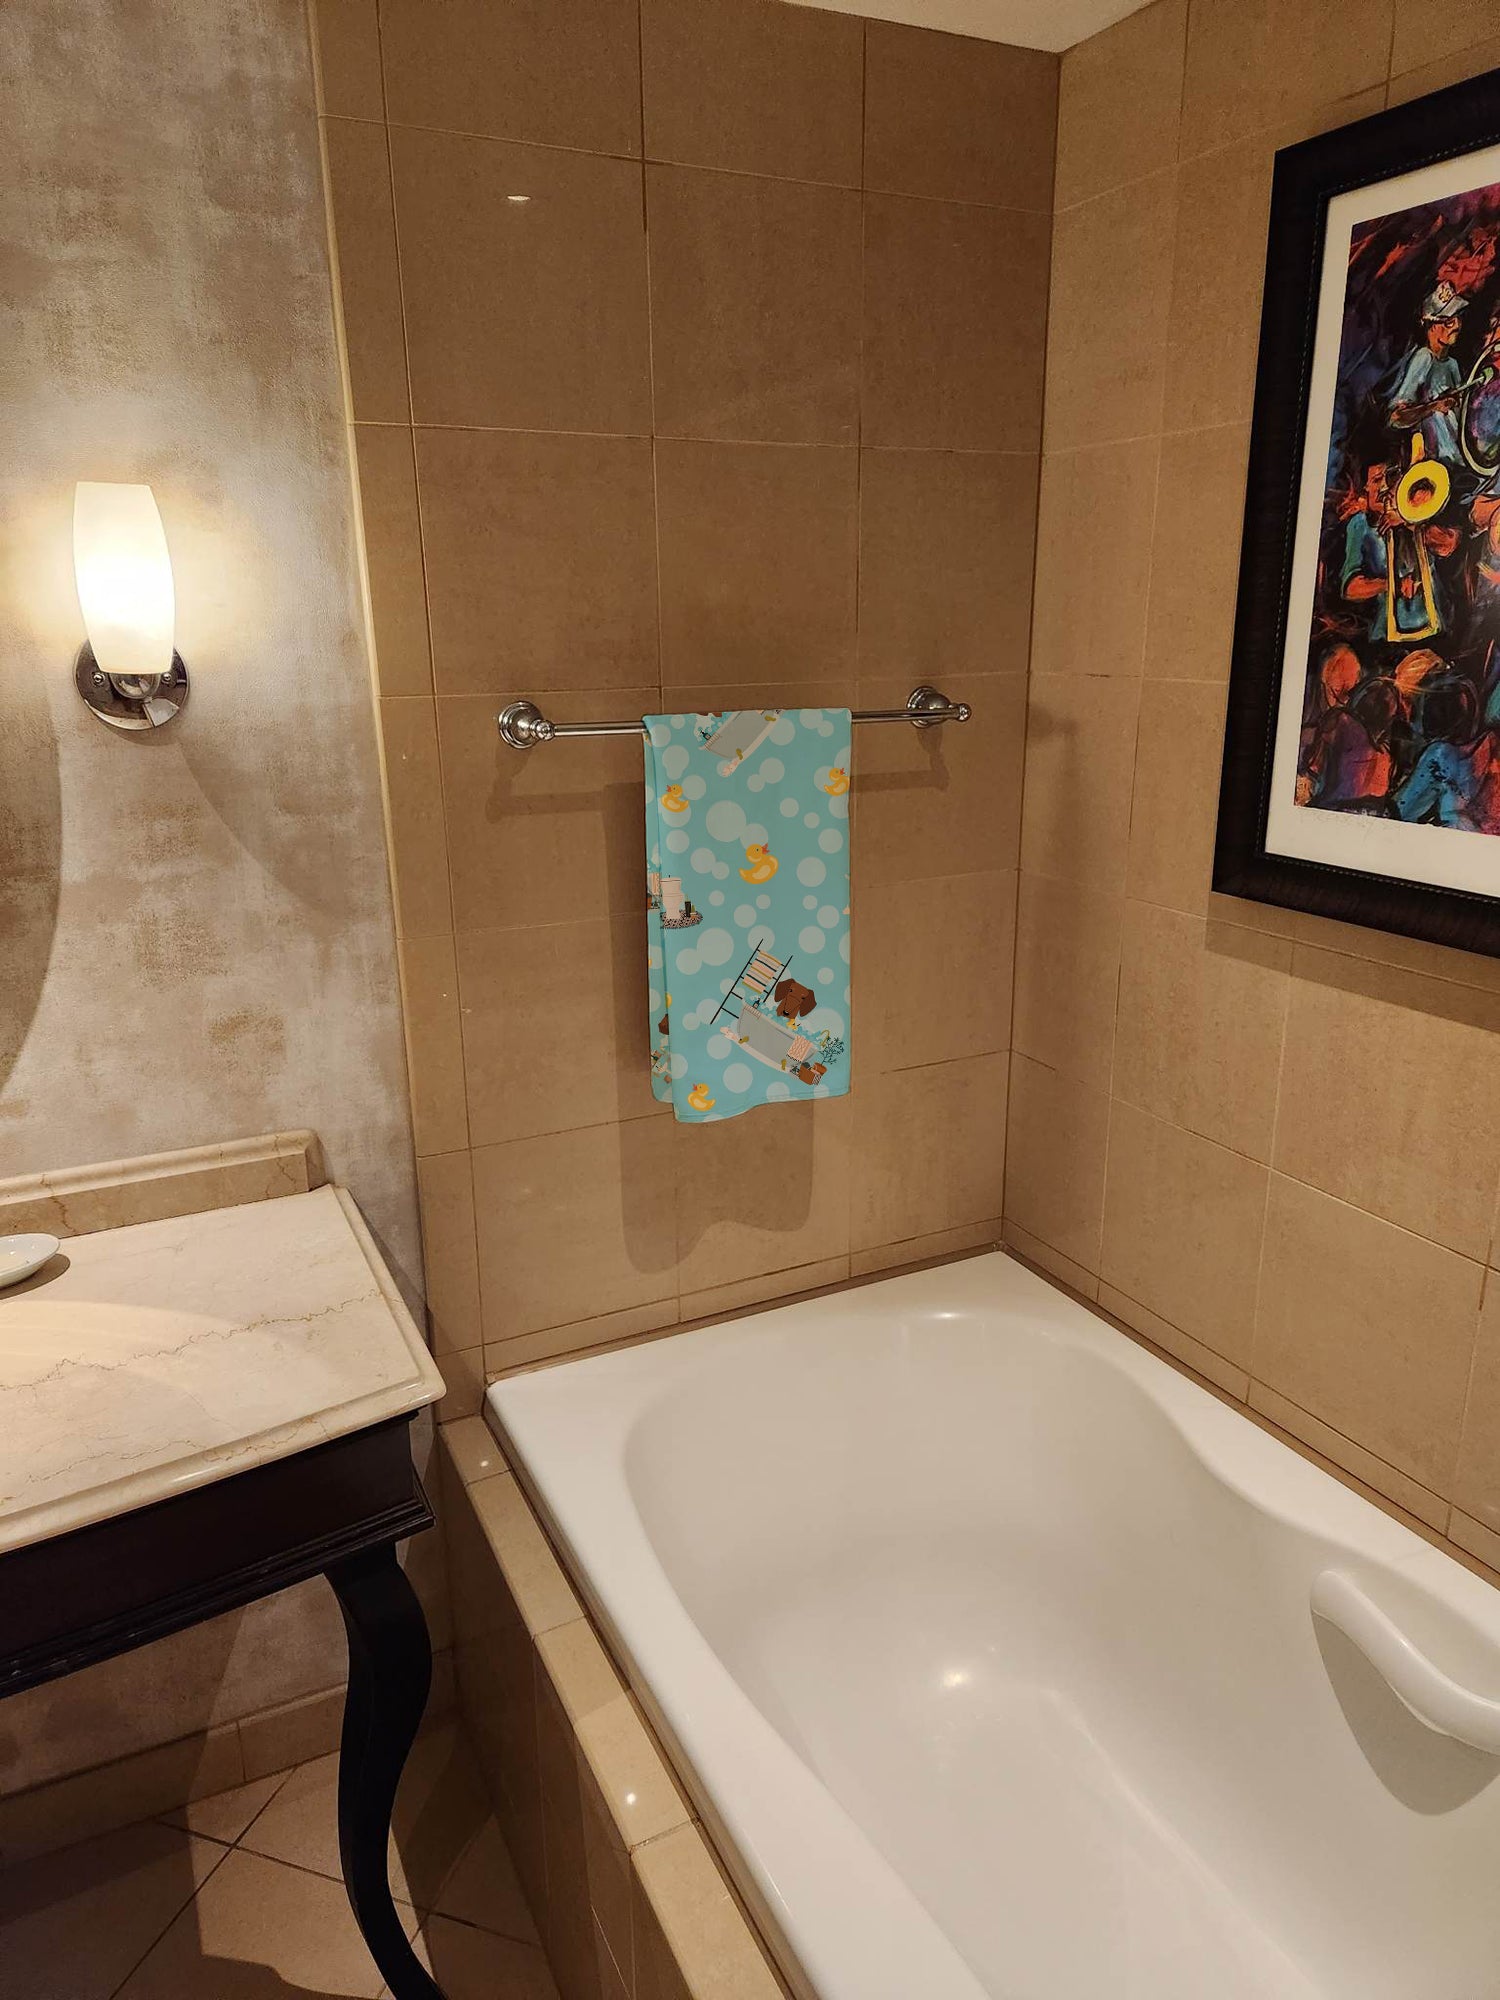 Red Brown Dachshund in Bathtub Bath Towel Large